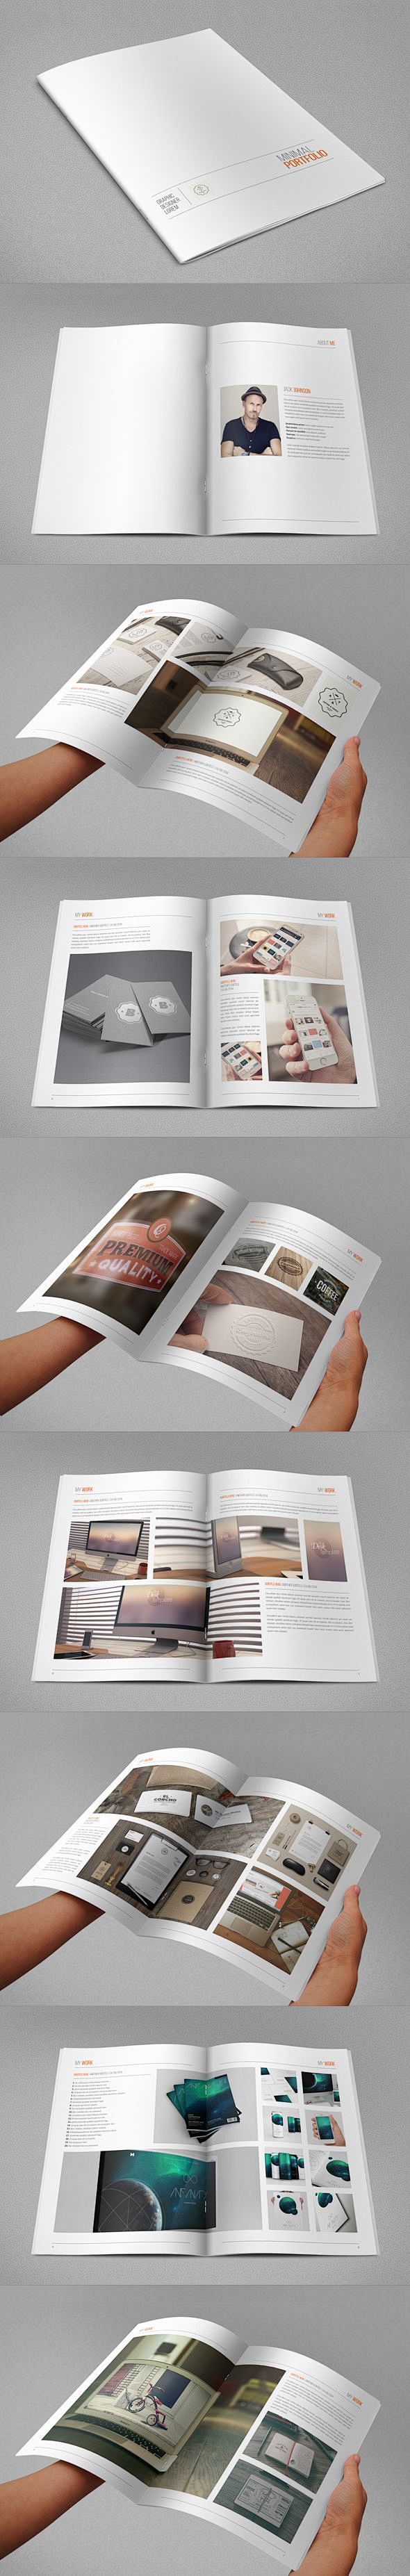 [创意画册] 简洁的画册设计 白色时尚创...